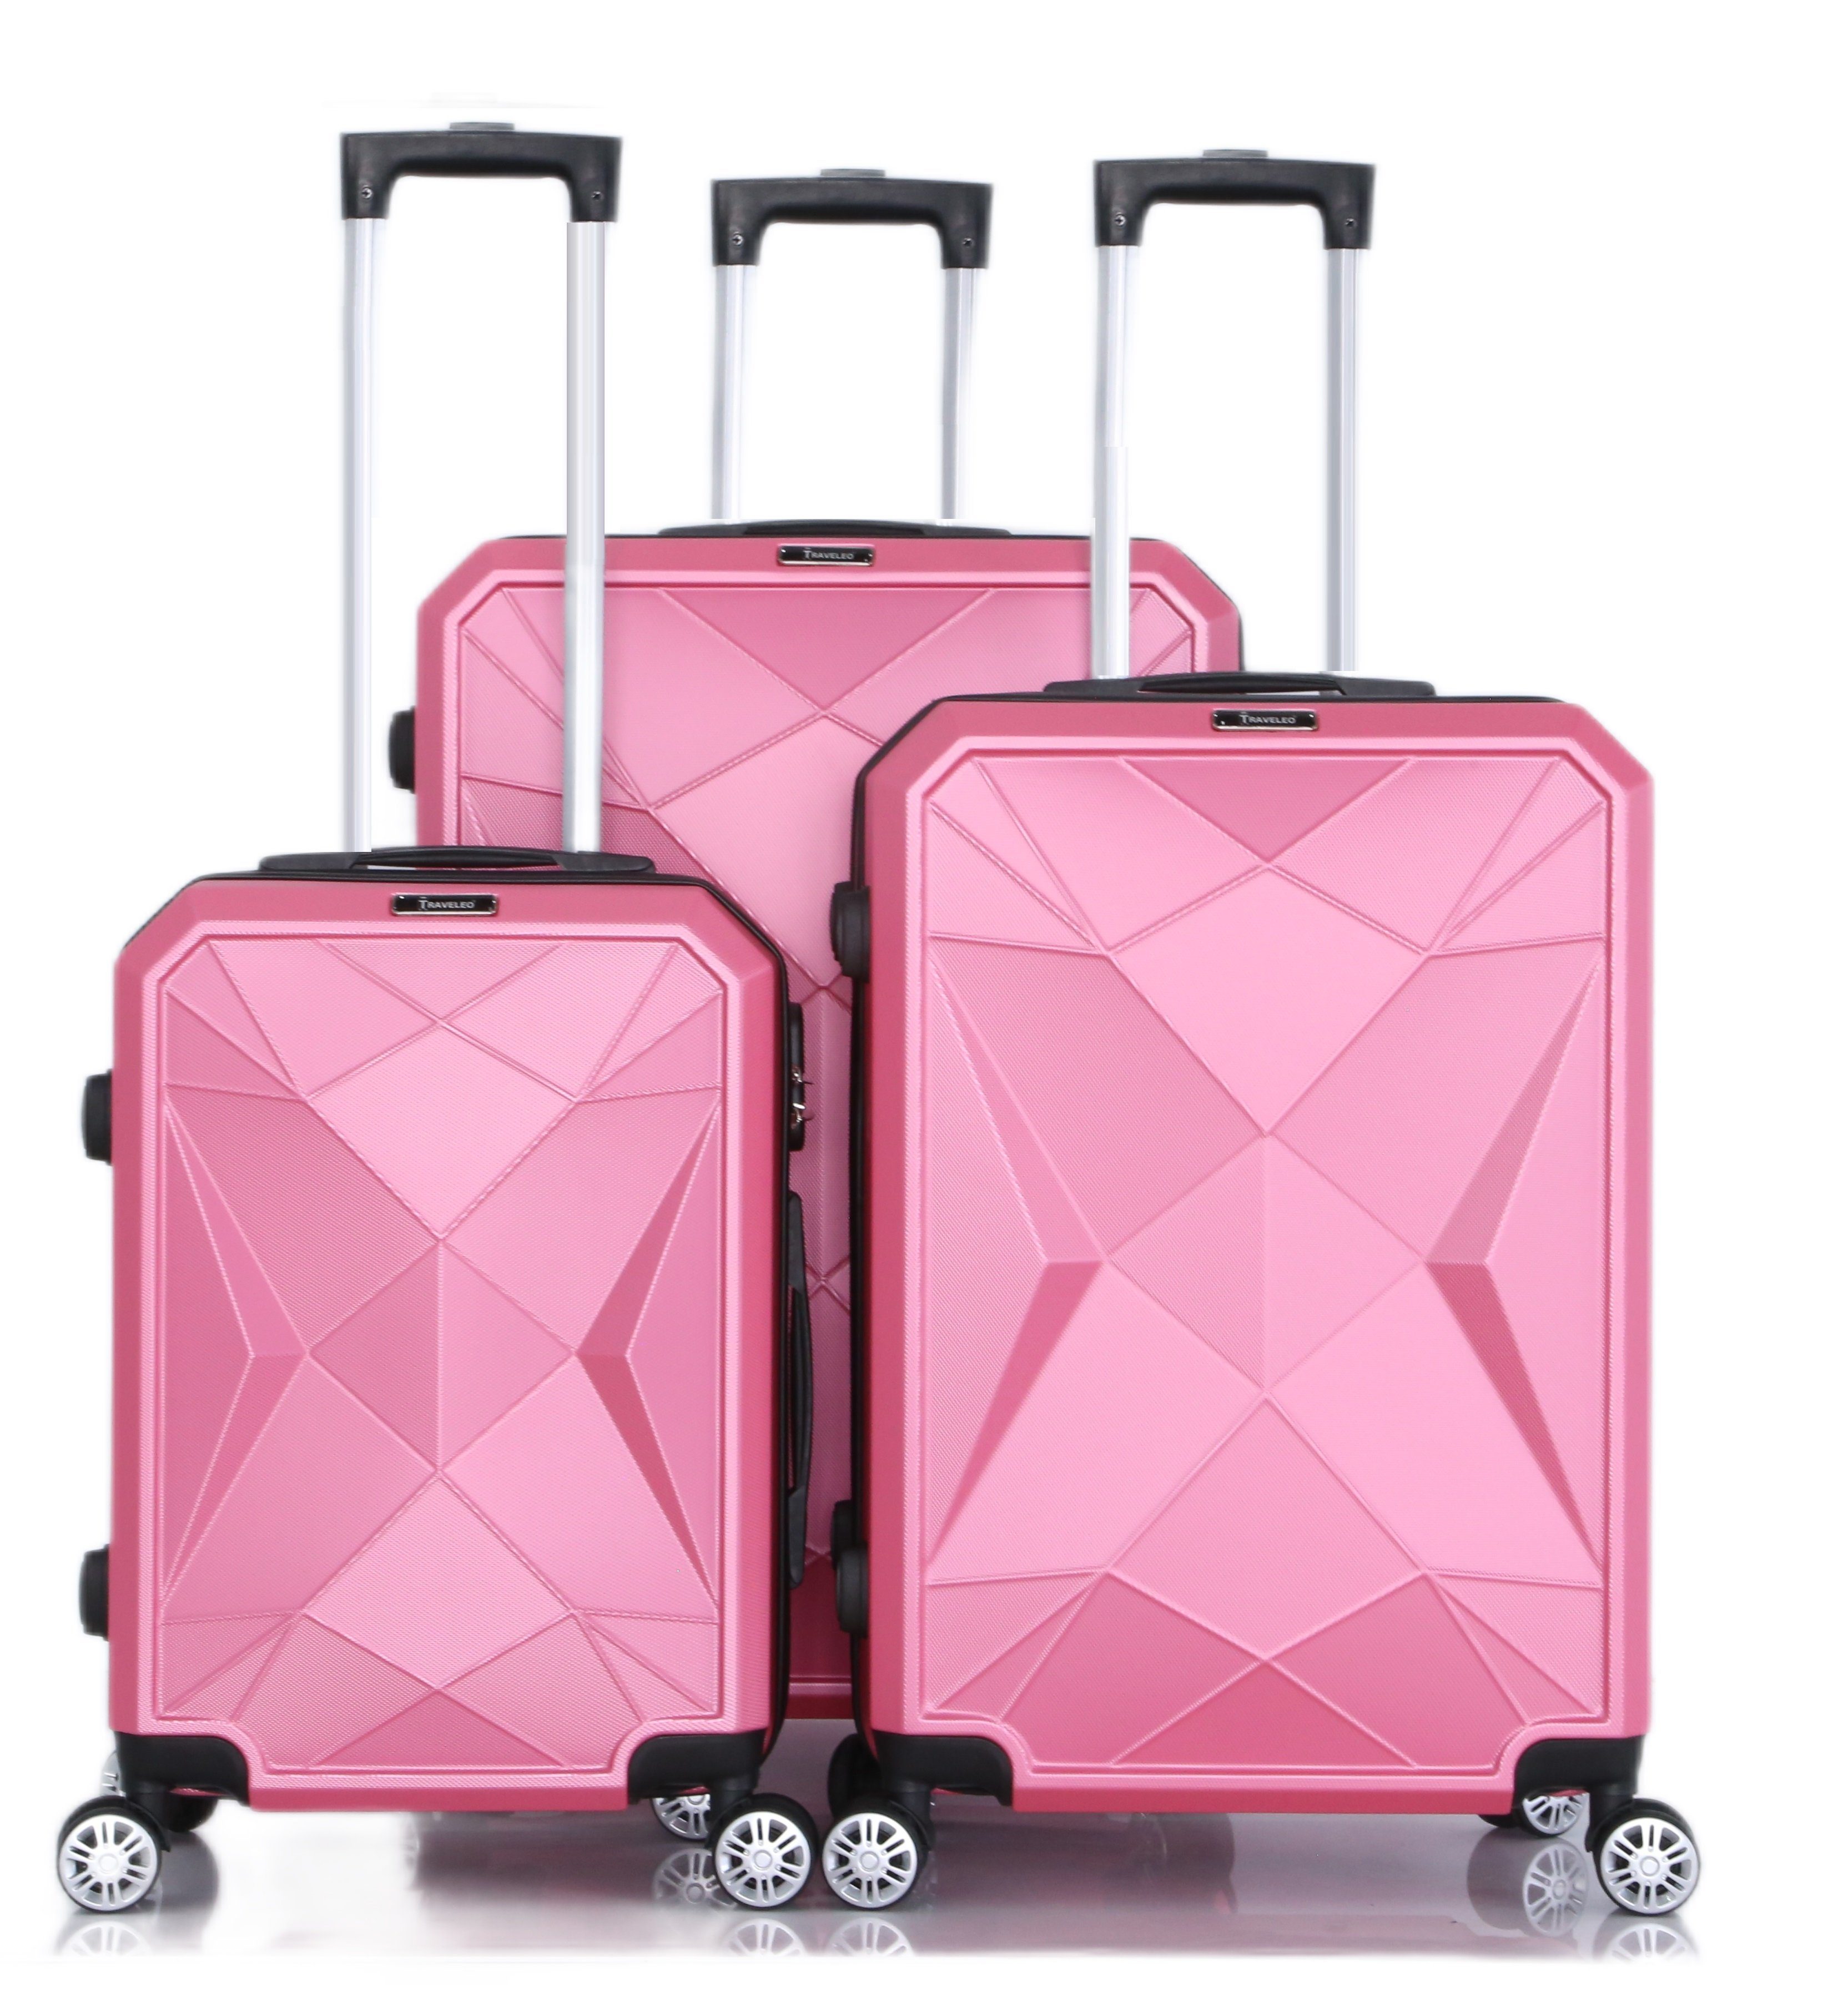 [Neu eingeführt] Cheffinger Kofferset Handgepäck Reisekoffer Reisetasche 3-teilig Gepäck Kofferset Koffer Pink